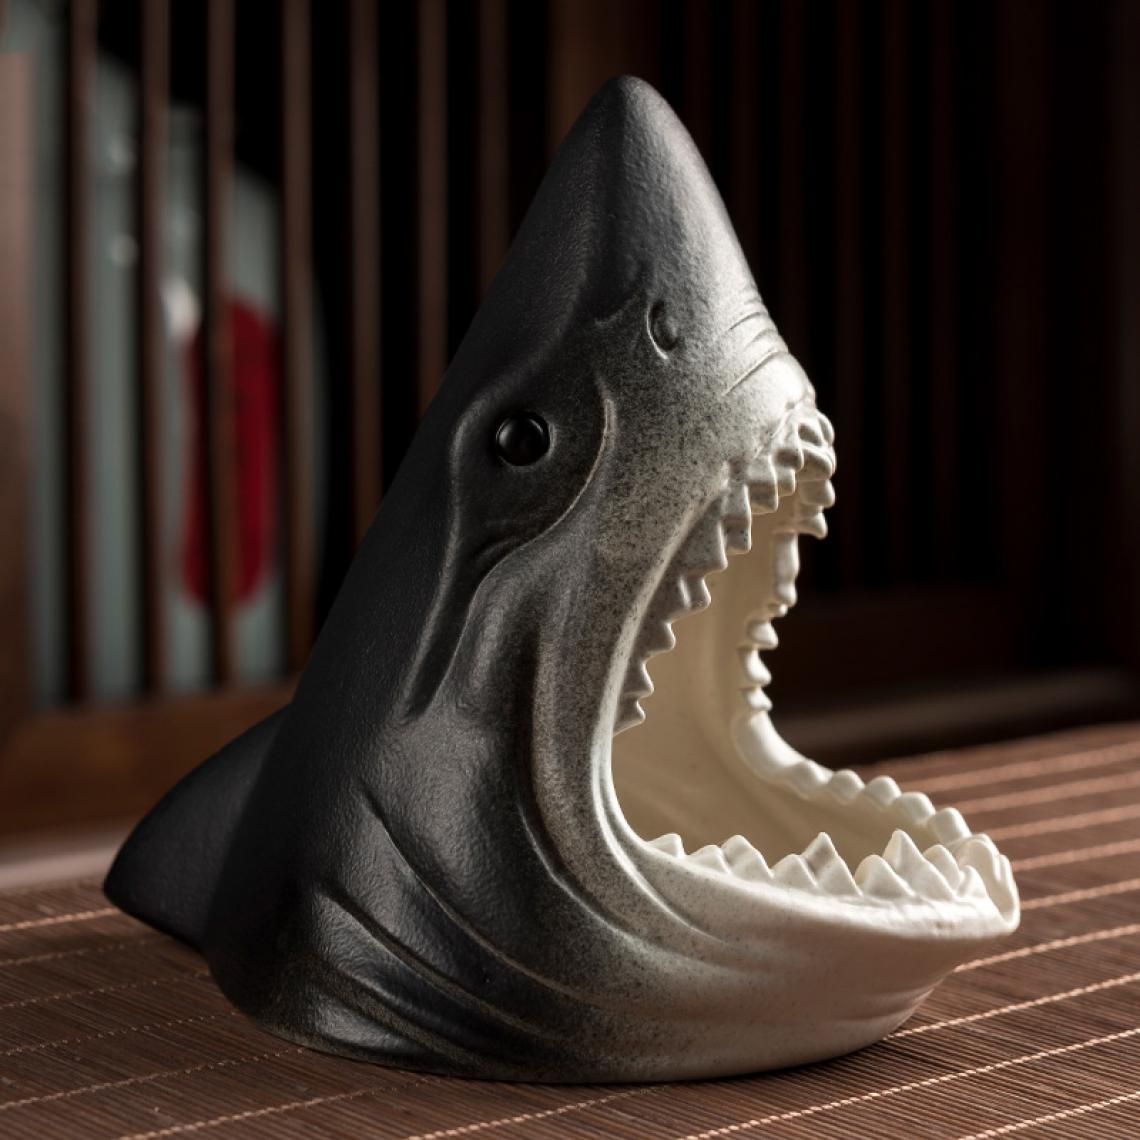 Universal - Cendrier céramique Creative Shark Sculpture de bureau Décoration de bureau multifonctionnelle Boîte de rangement - Cendriers